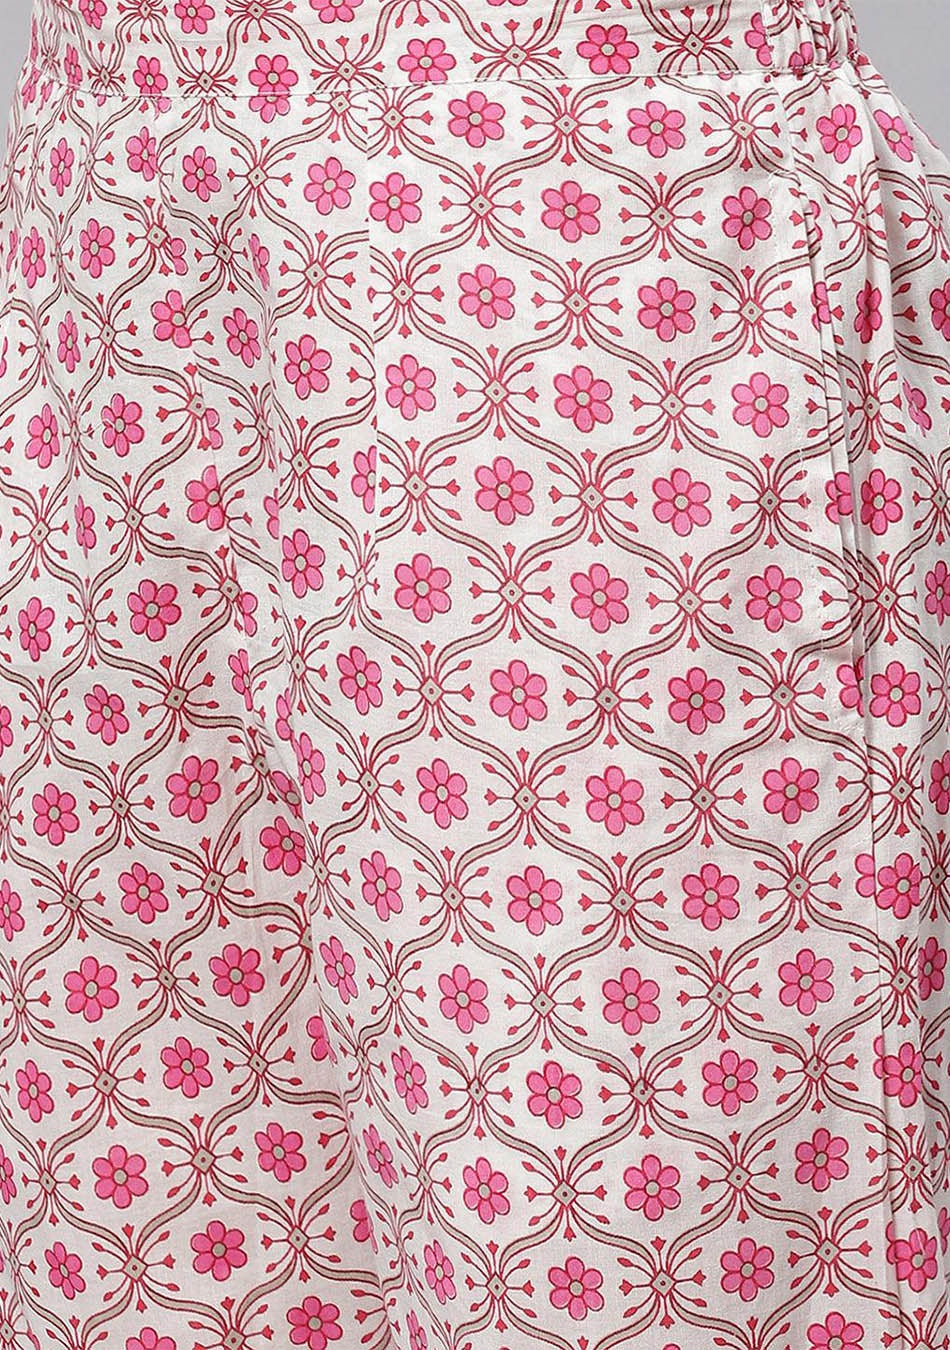 Pink Cotton Kurta Pant set with Dupatta